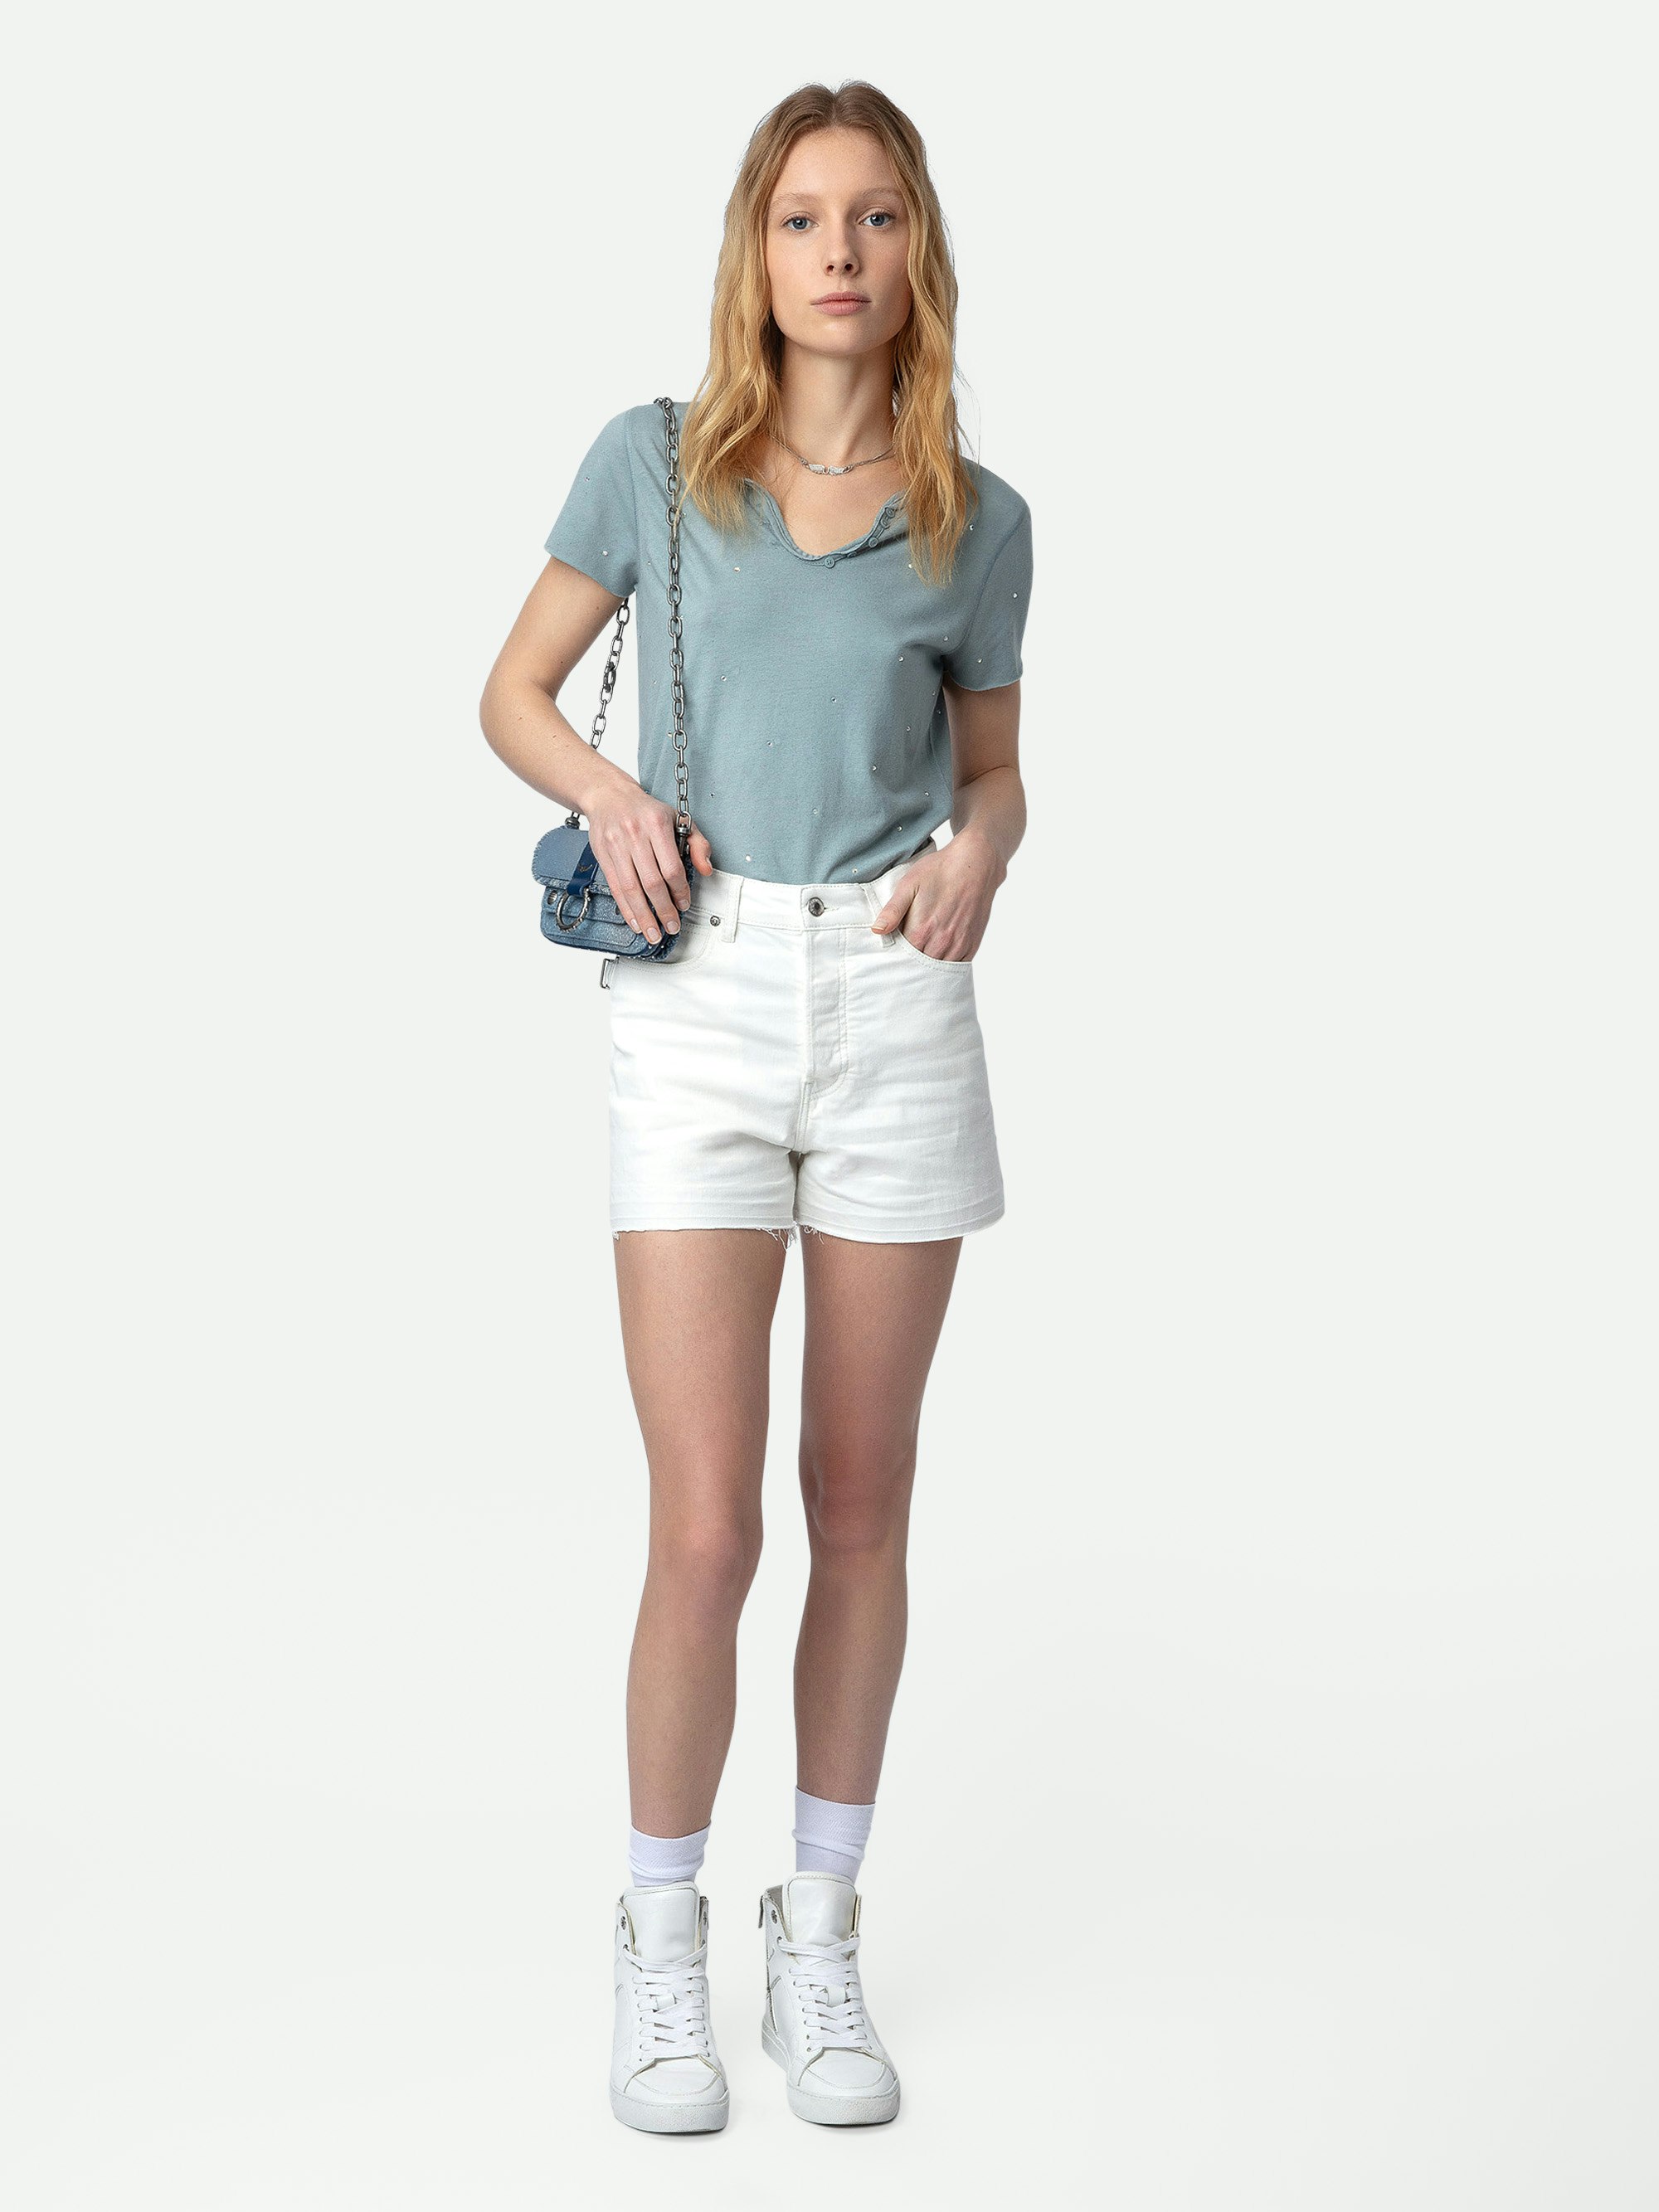 Shorts Sissi Denim - Shorts in denim bianchi con tasche, dettagli impunturati e bordi grezzi.